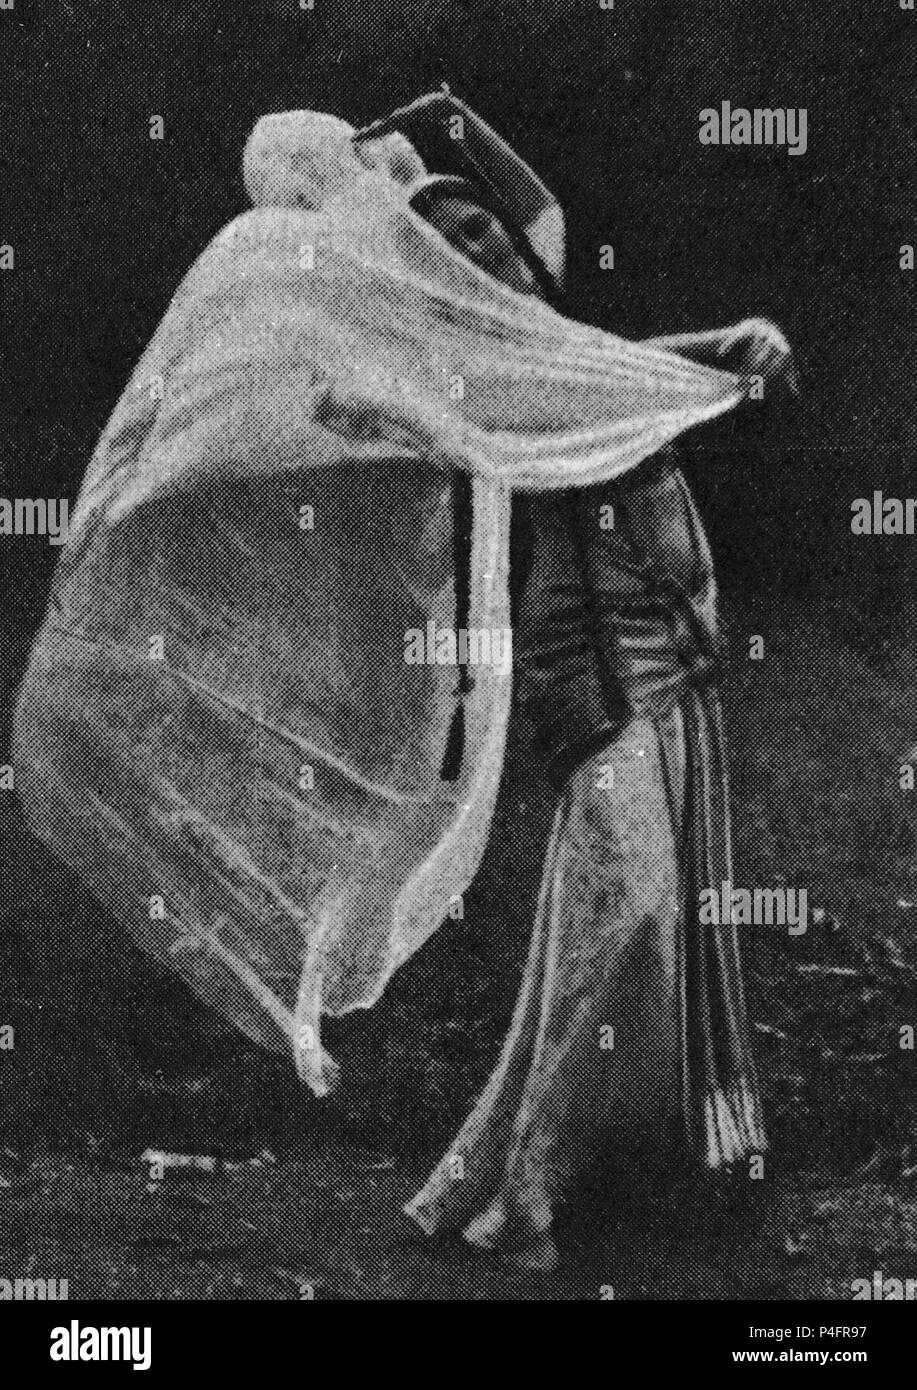 MATA HARI- MARGARETHA GEERTRUIDA ZELLE 1876/1917- BAILARINA/ESPIA HOLANDESA. Stock Photo